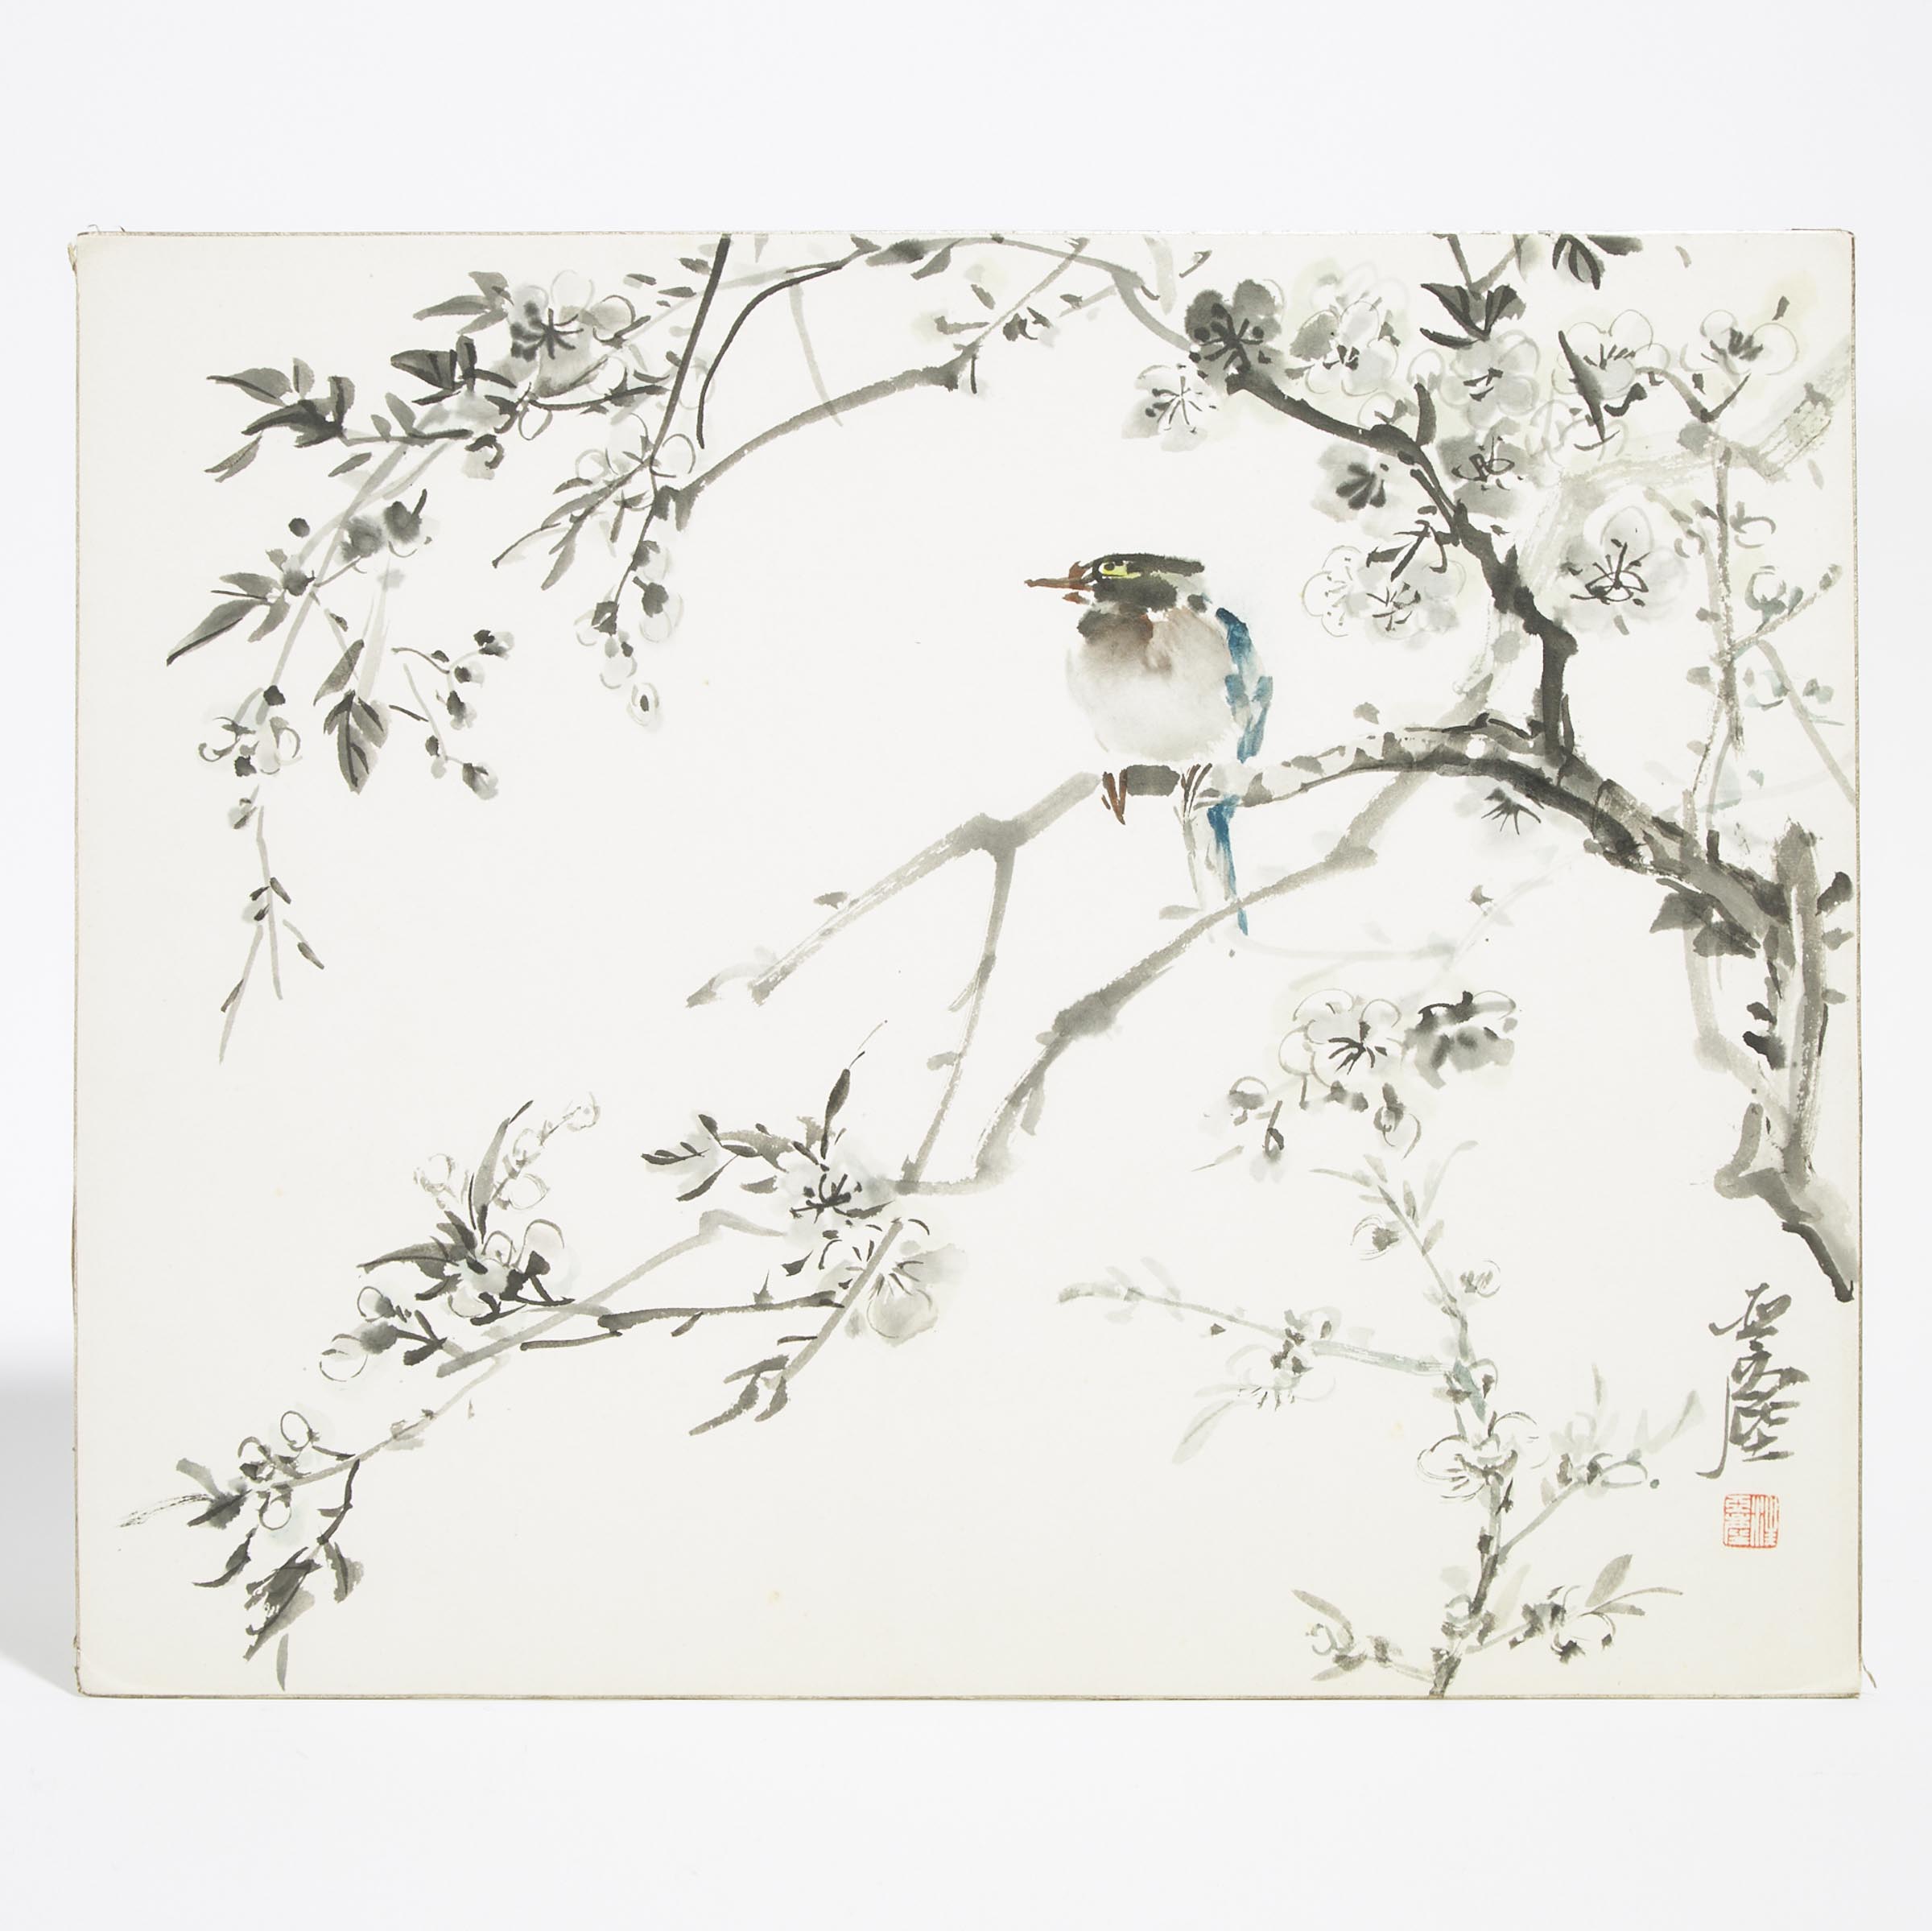 Wang Yachen (1894-1983), Bird and Flowers